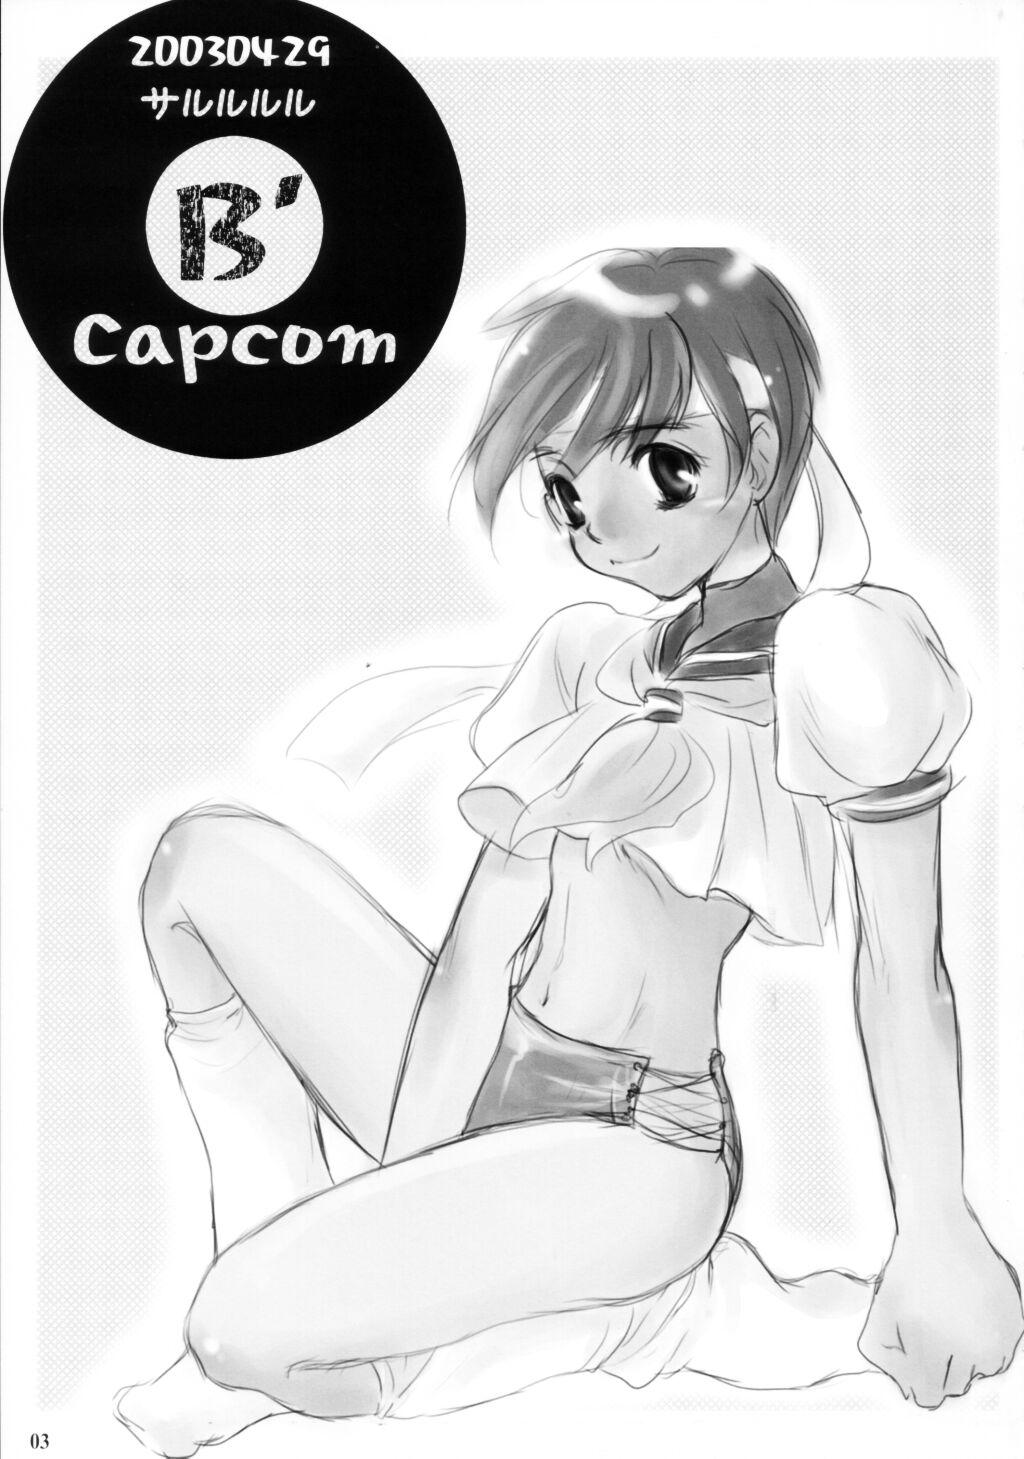 B' Capcom 1